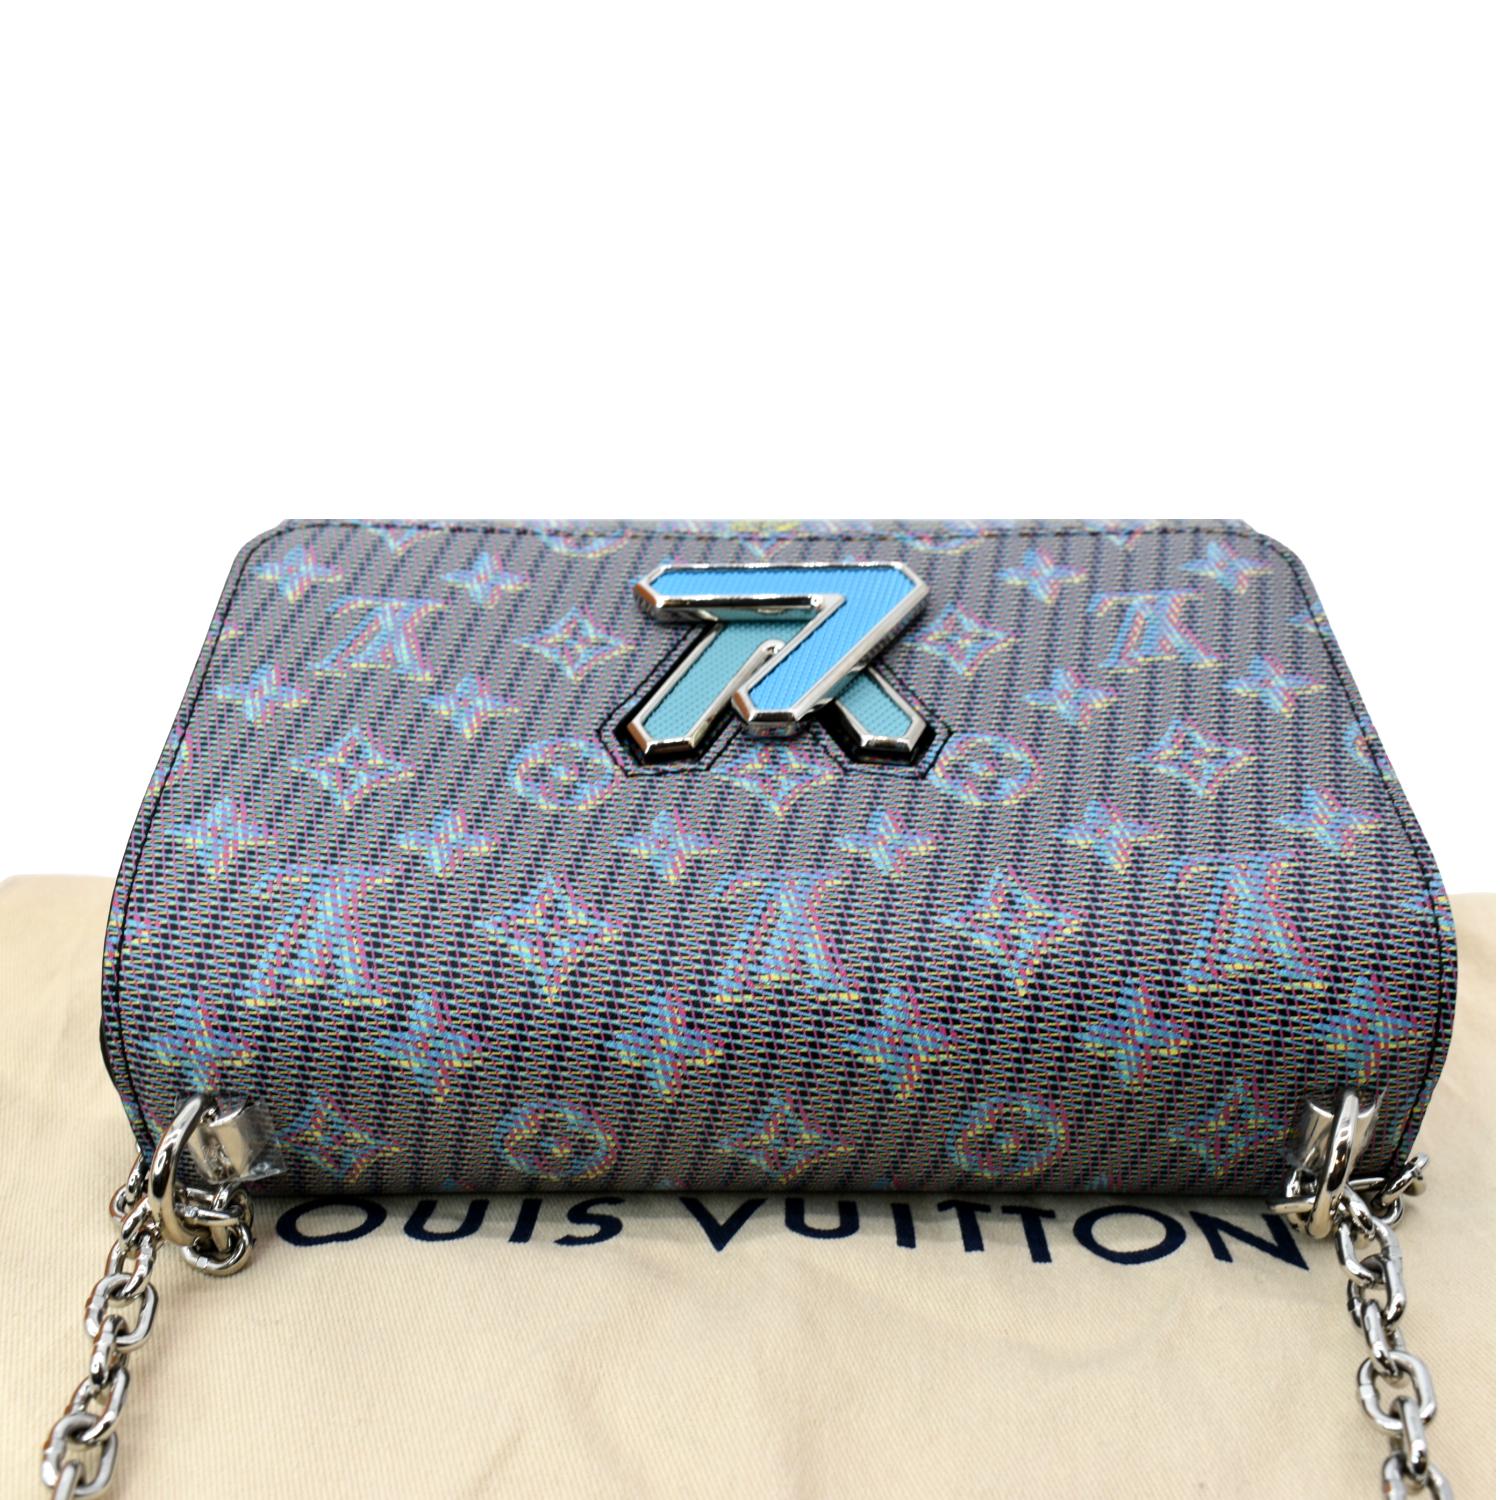 Louis Vuitton Twist Shoulder Bag in Blue Leather